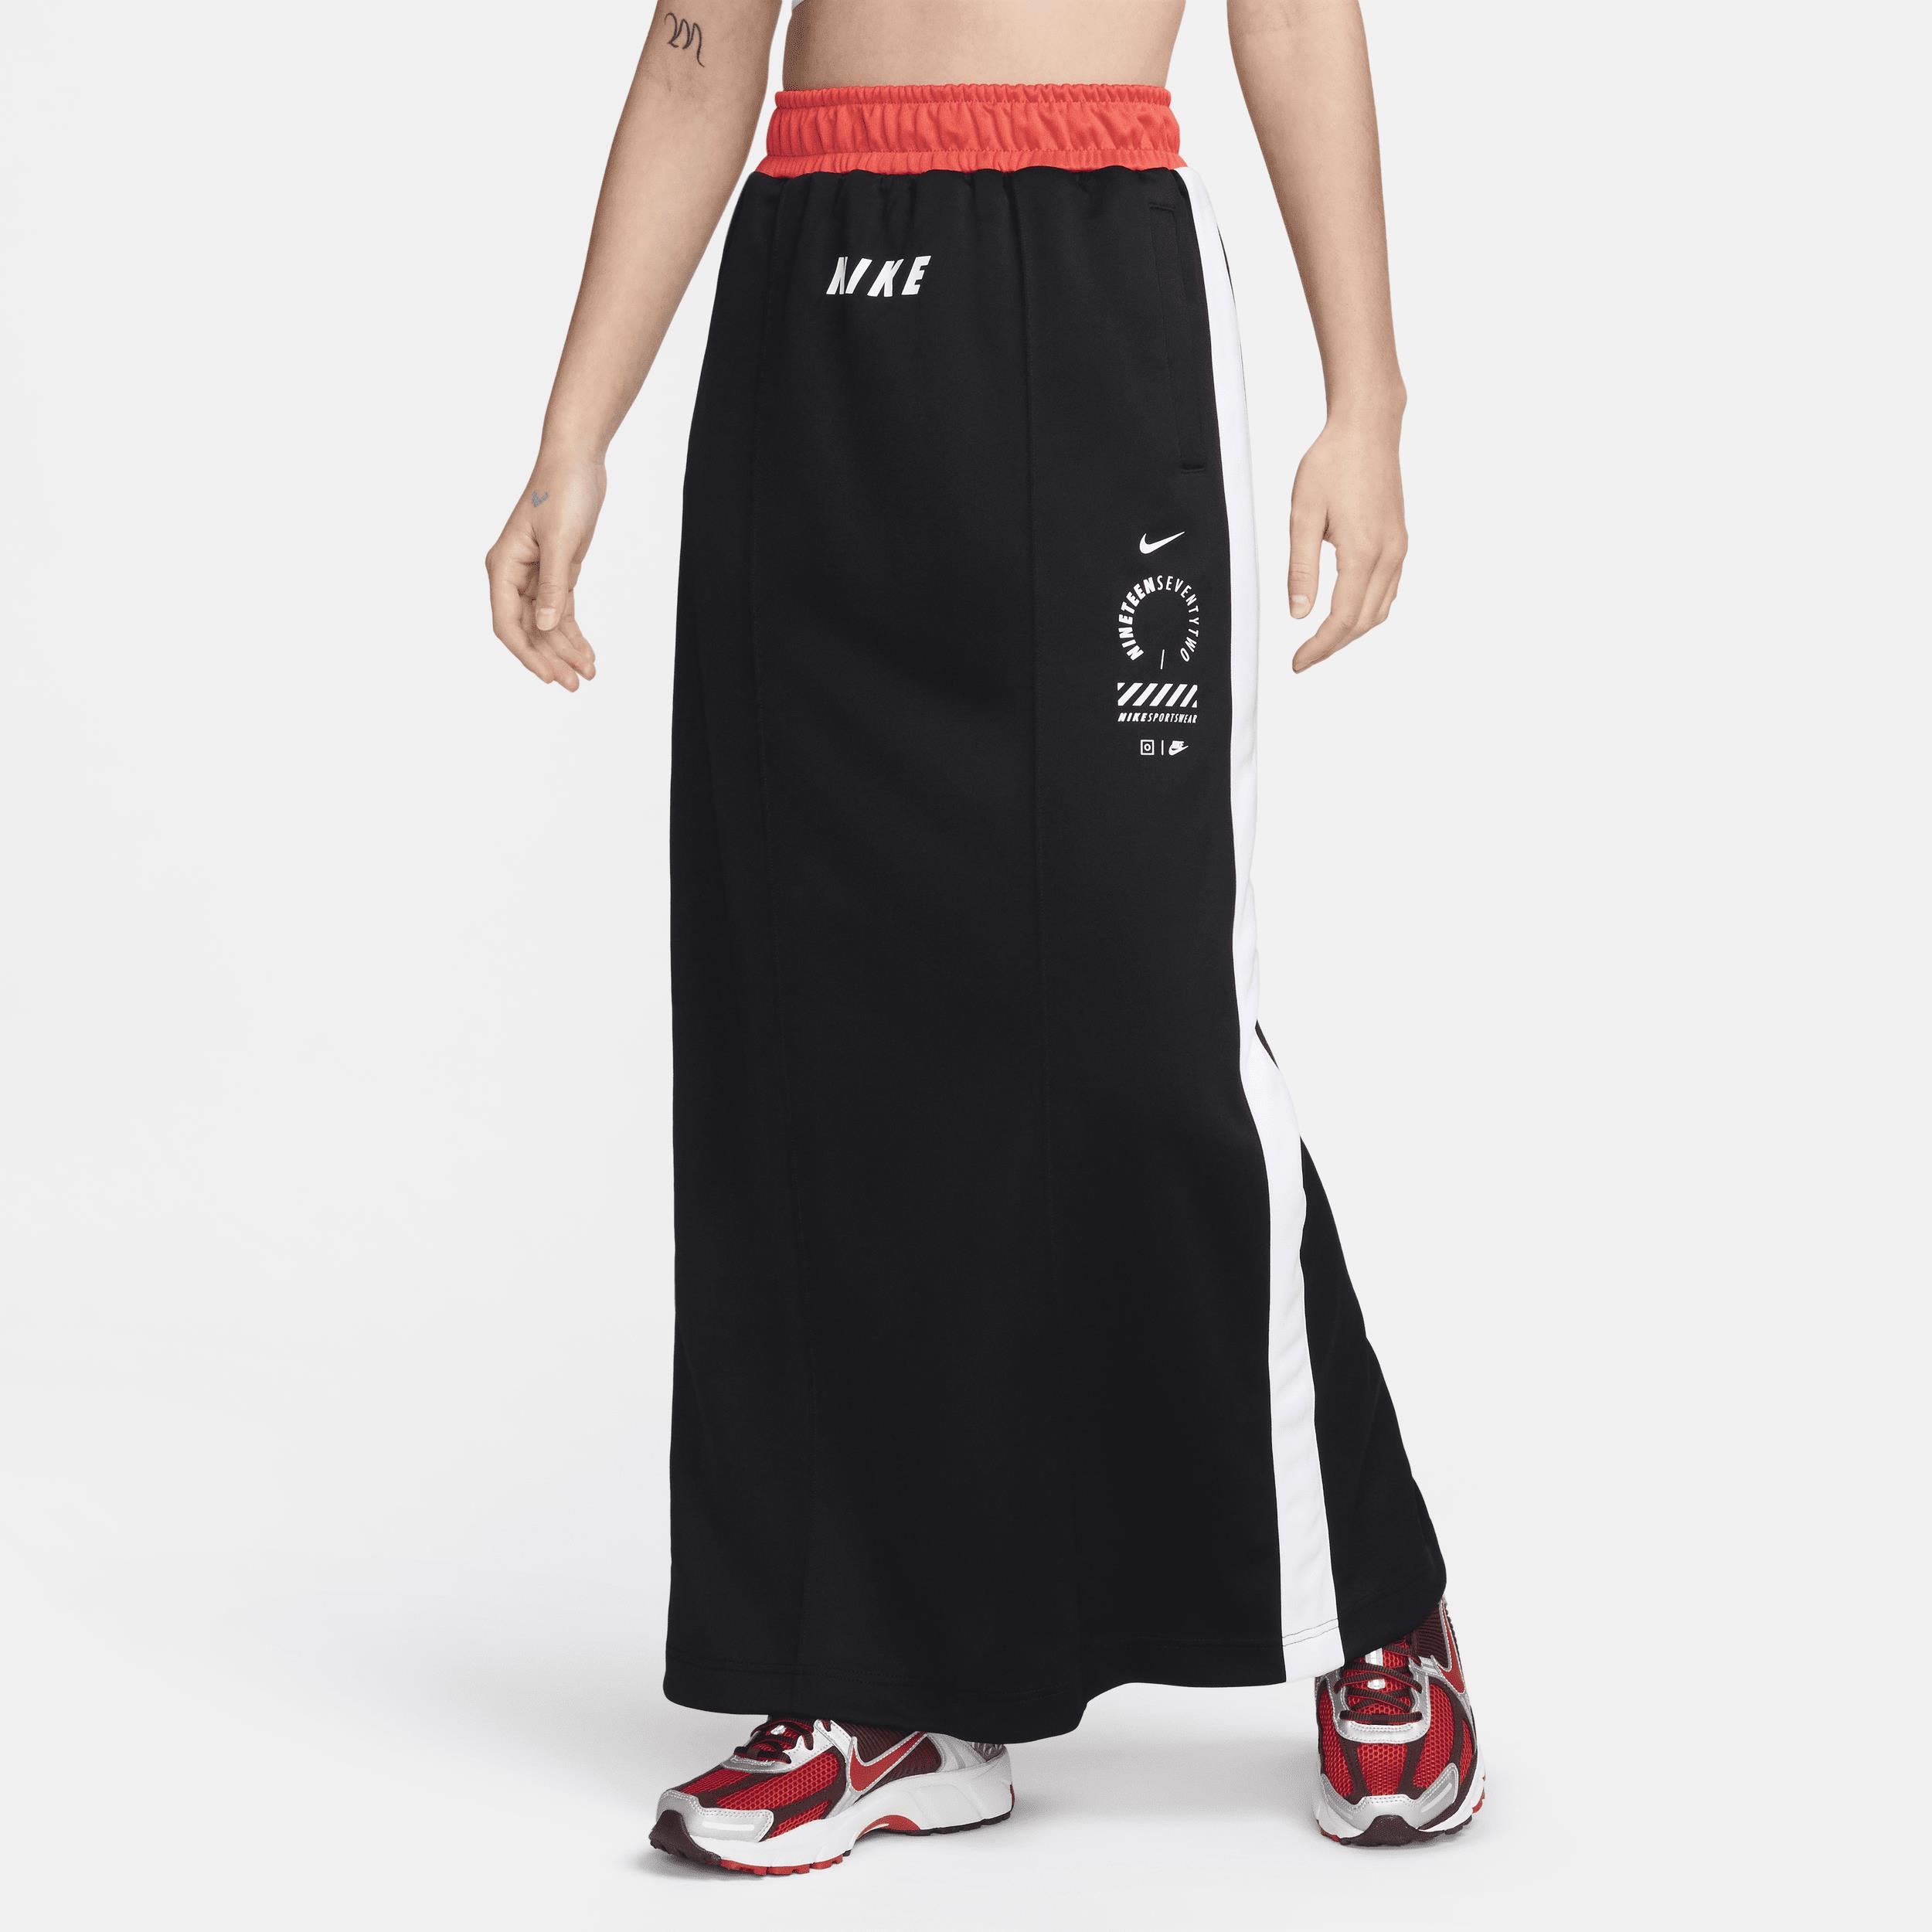 Nike Sportswear Women's Skirt - Black